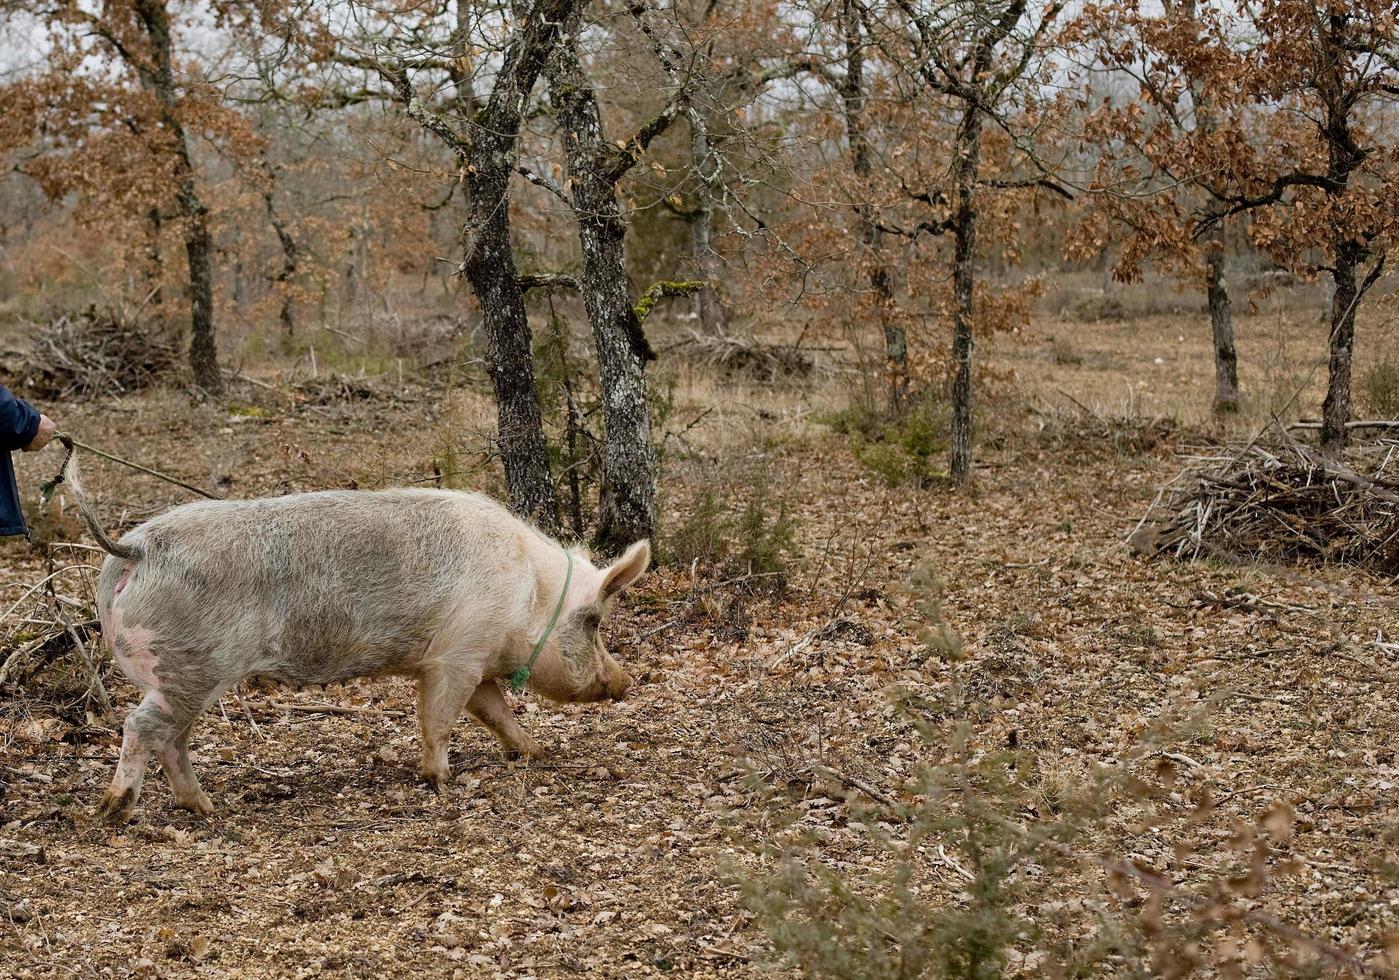 oogst van zwarte truffels met de hulp van een varken in lalbenque, frankrijk foto